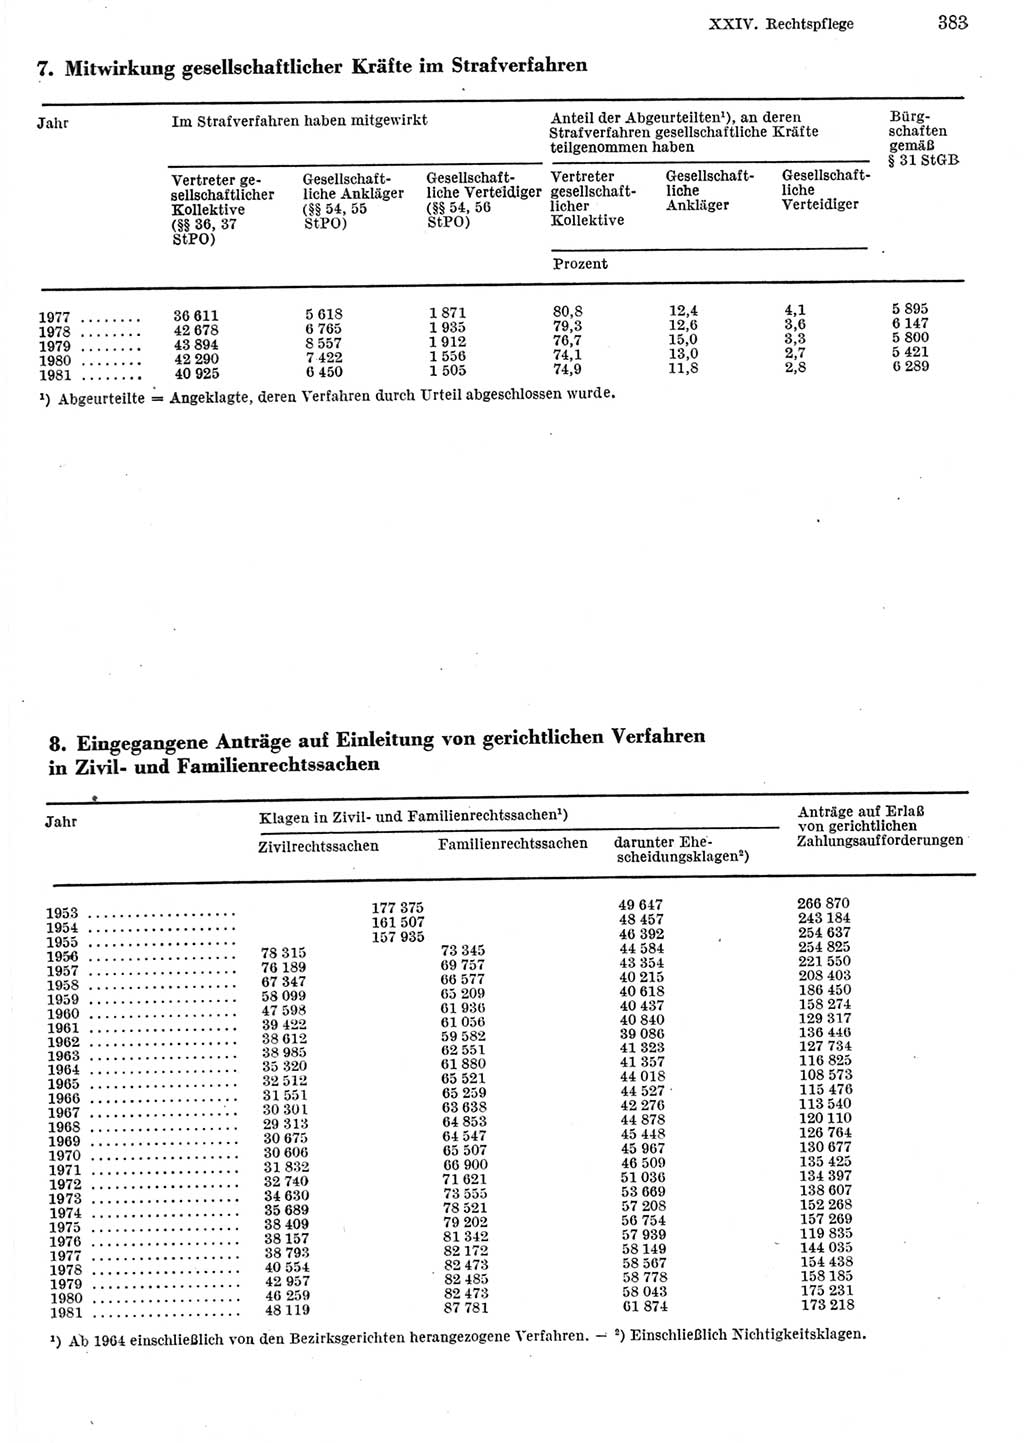 Statistisches Jahrbuch der Deutschen Demokratischen Republik (DDR) 1982, Seite 383 (Stat. Jb. DDR 1982, S. 383)